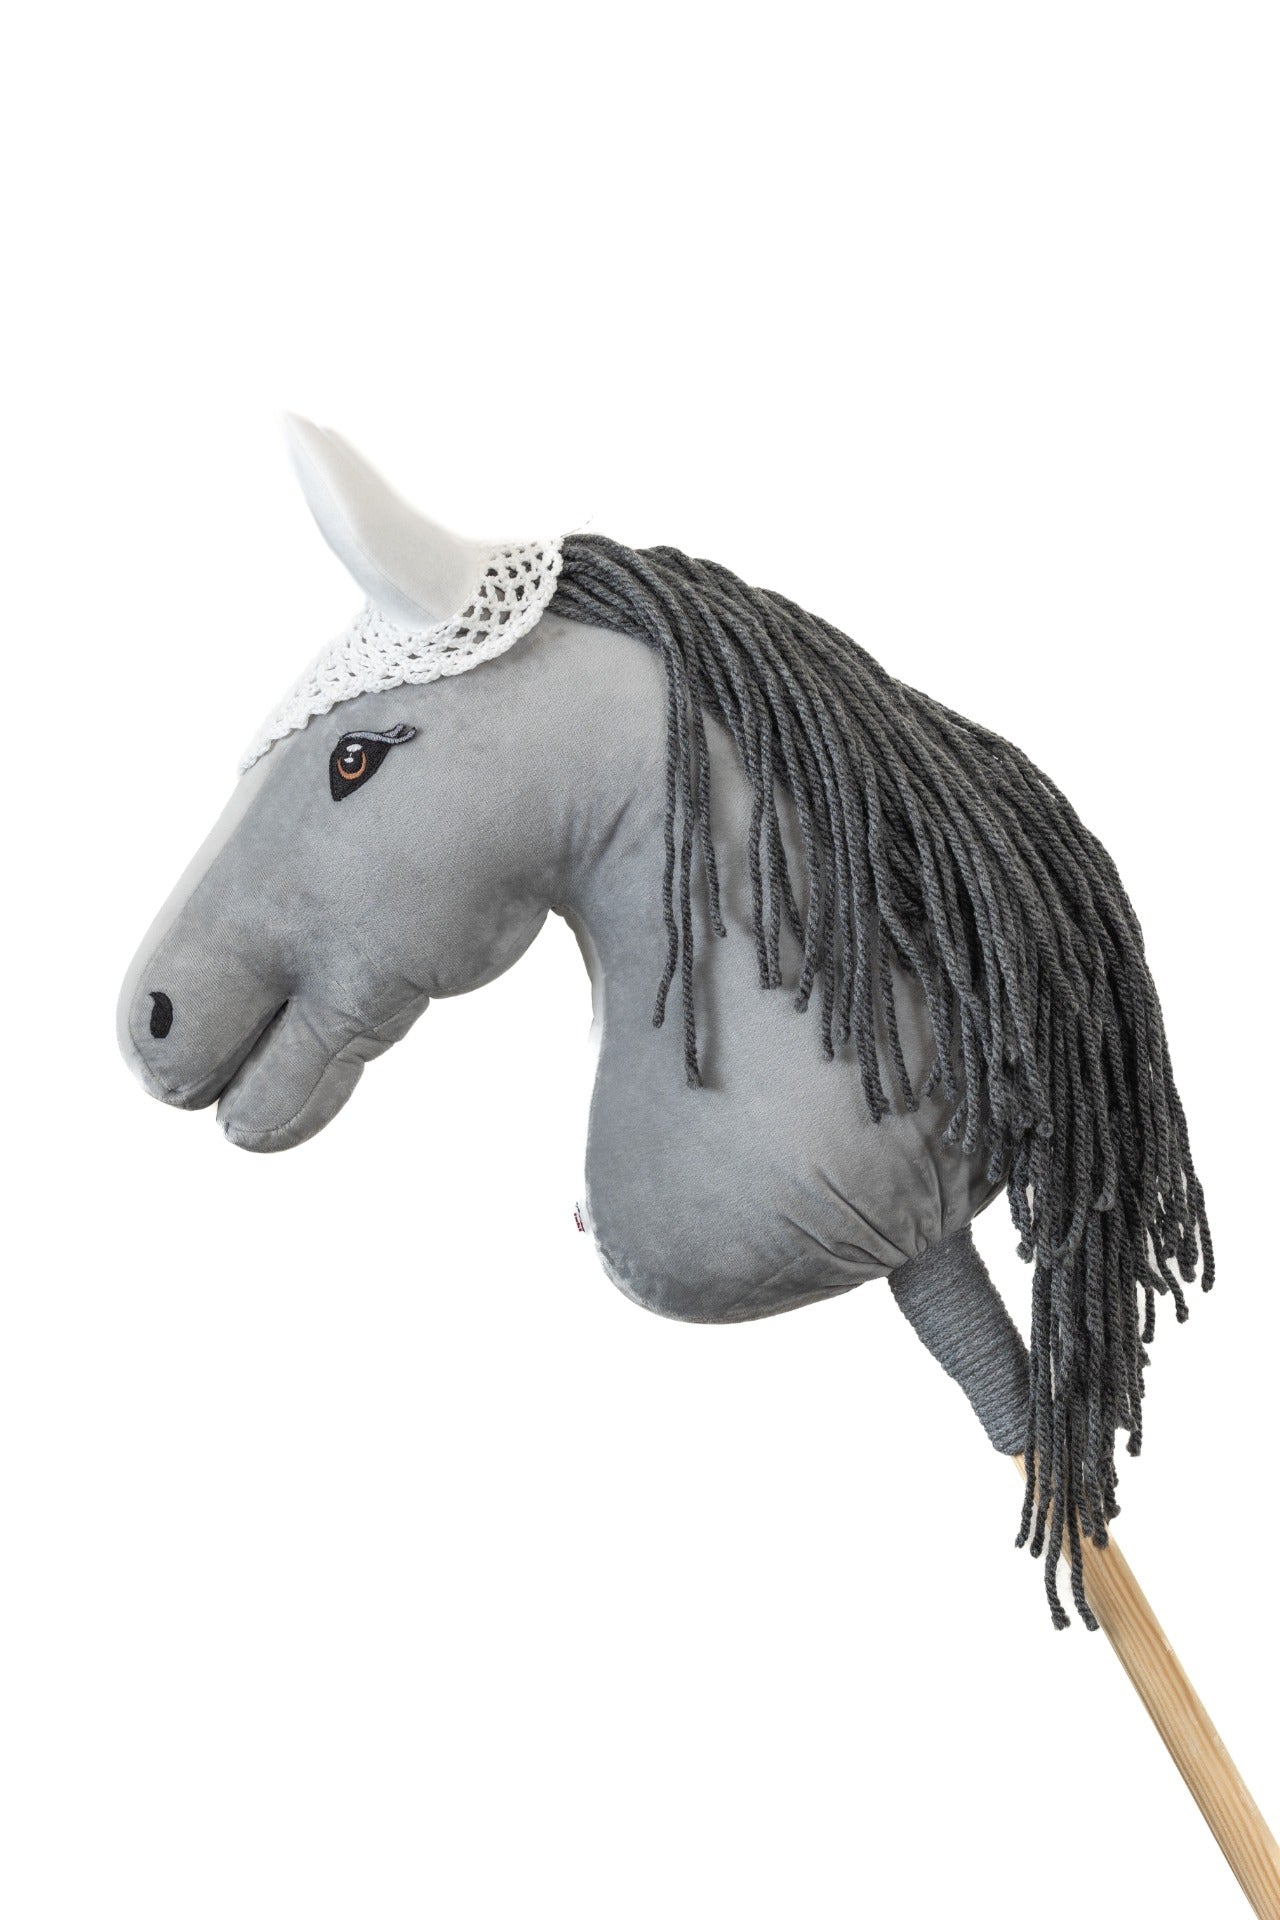 Ear net crocheted - White - Adult horse